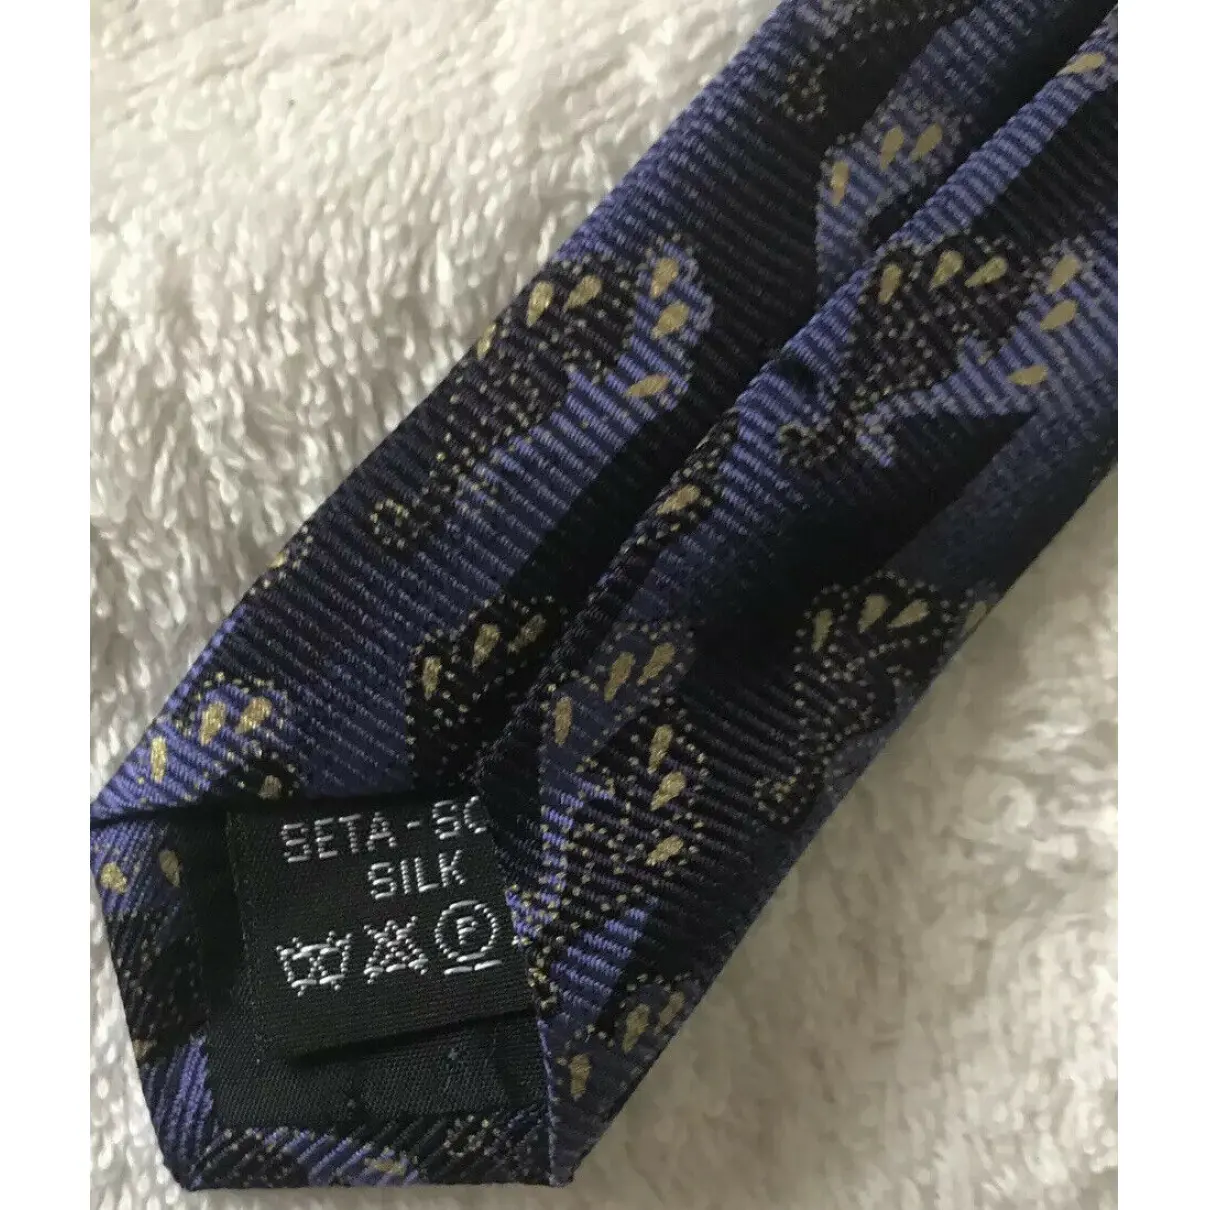 Silk tie Gianni Versace - Vintage